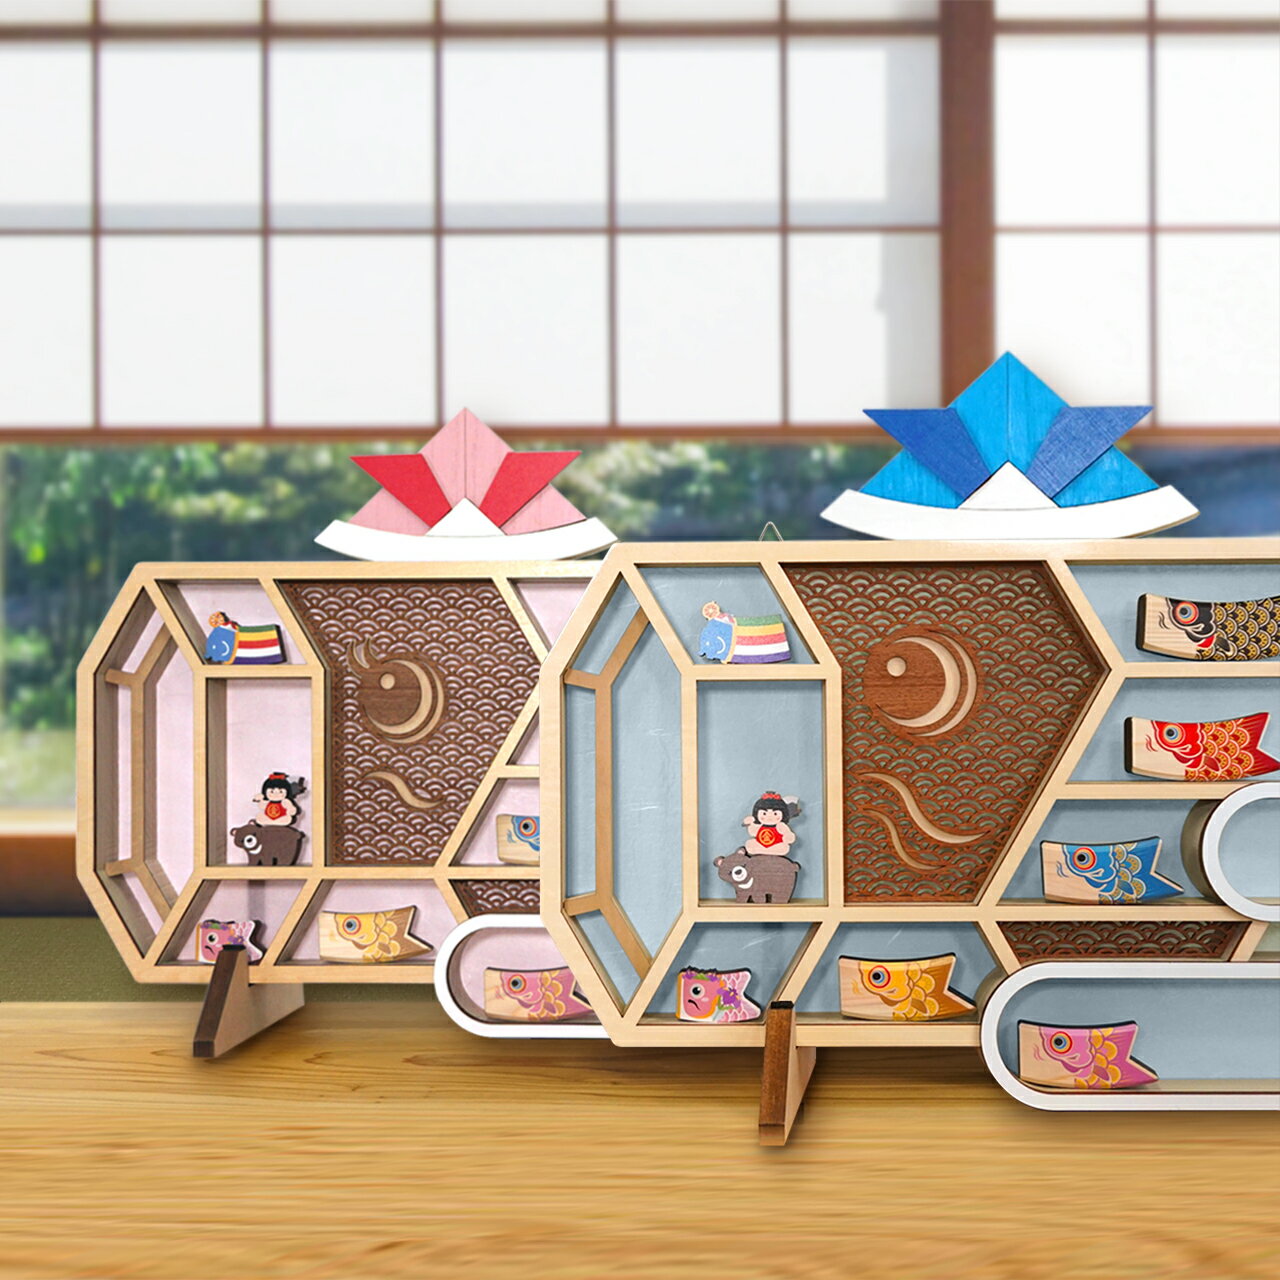 ナインディ— nine-D nined 日本製 木製 おもちゃ つみき 積木 積み木 玩具 インテリア デザイン 動物 お洒落 オシャレ おしゃれ 可愛い カワイイ かわいい 知育玩具 オブジェ 出産祝い 誕生日 こども 子ども 鯉のぼり